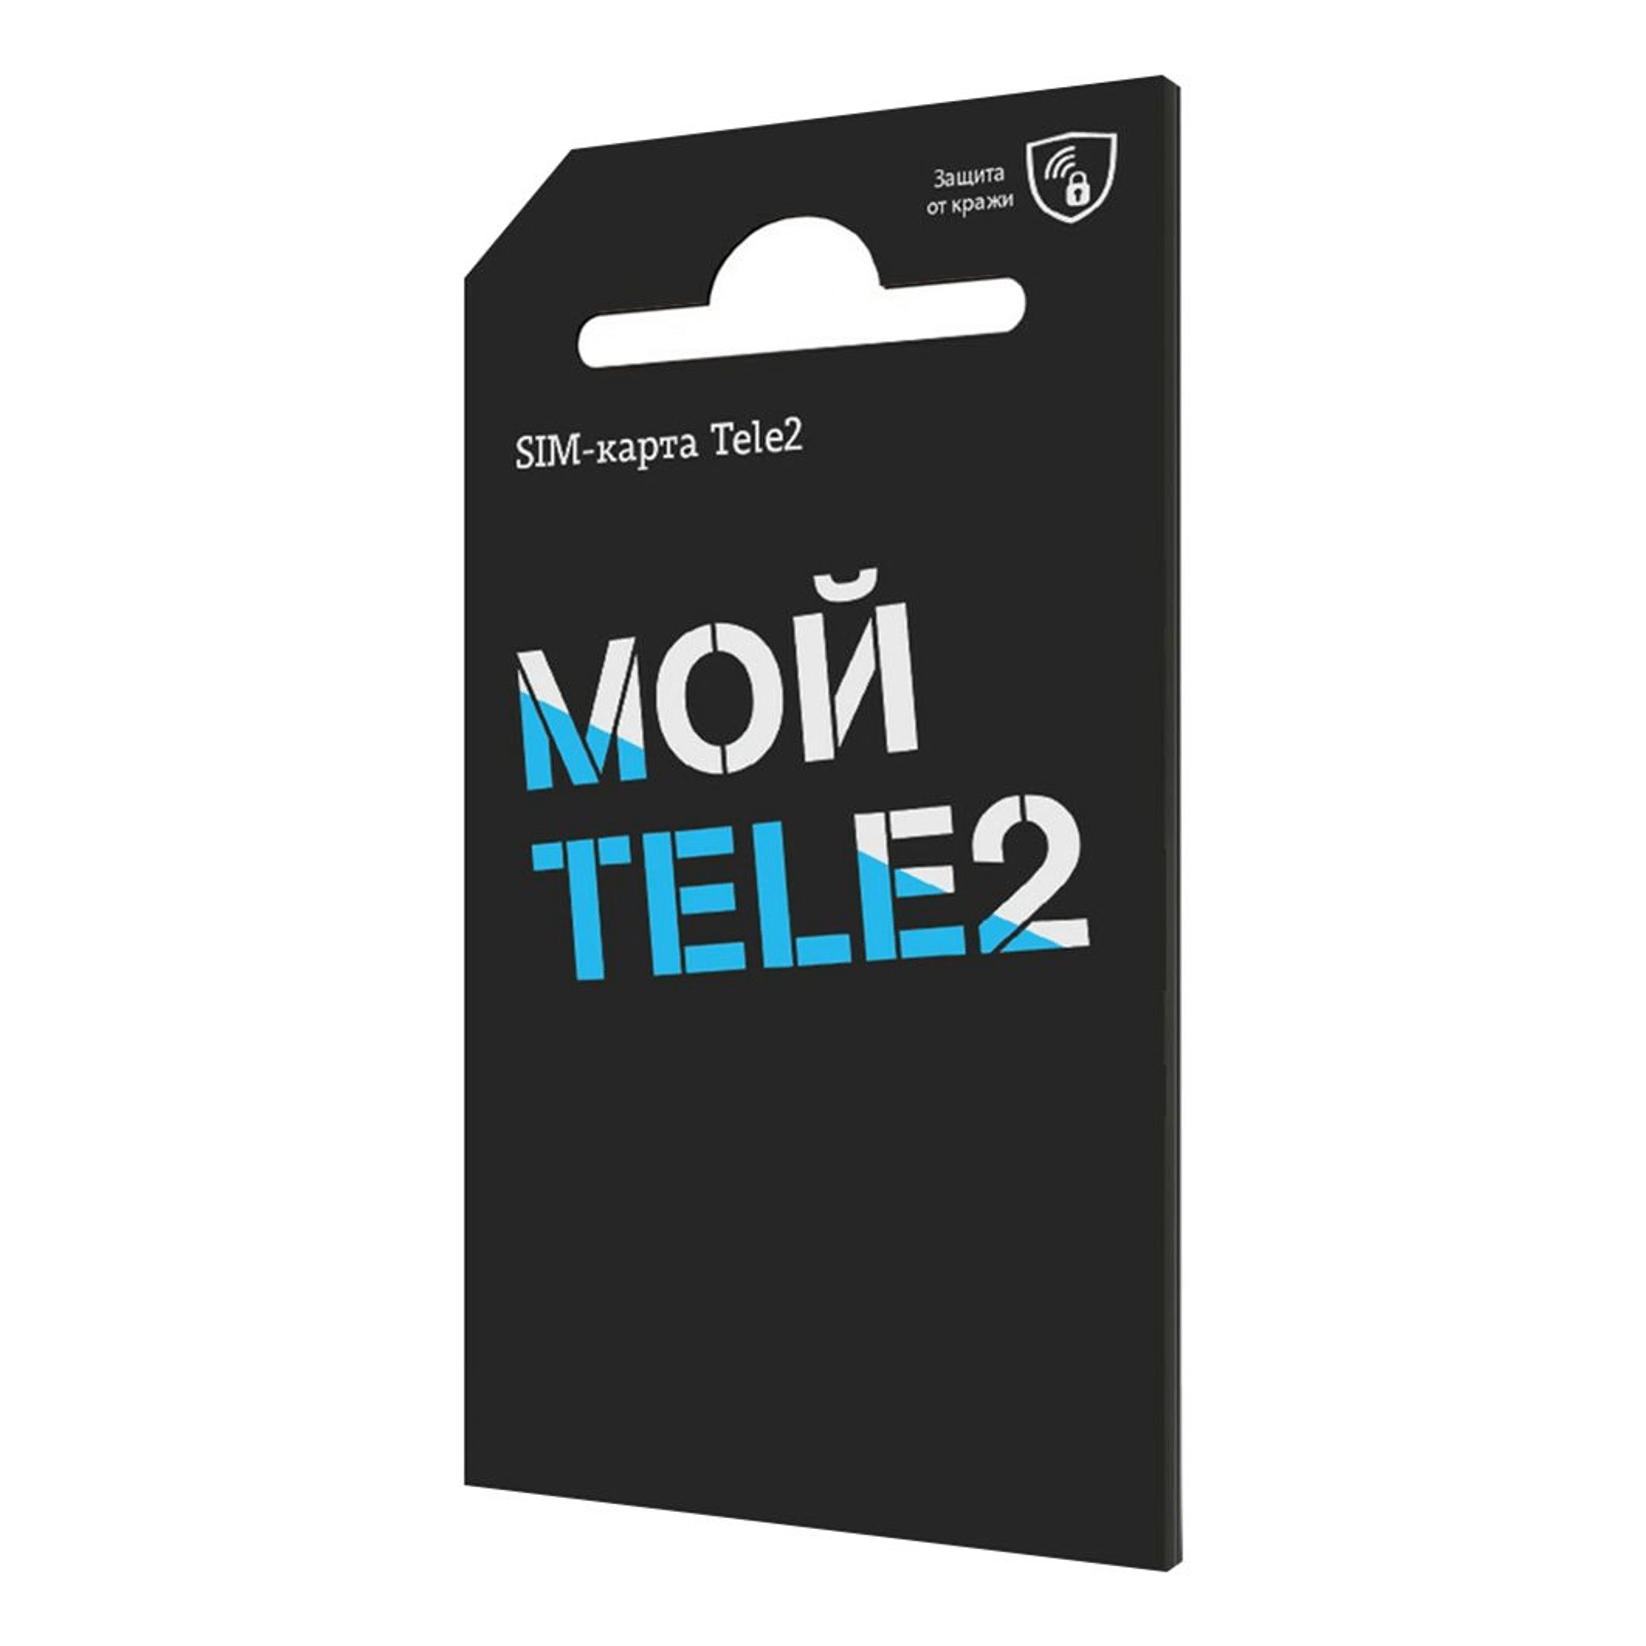 Sim-карта Tele2, купить в Москве, цены в интернет-магазинах на Мегамаркет